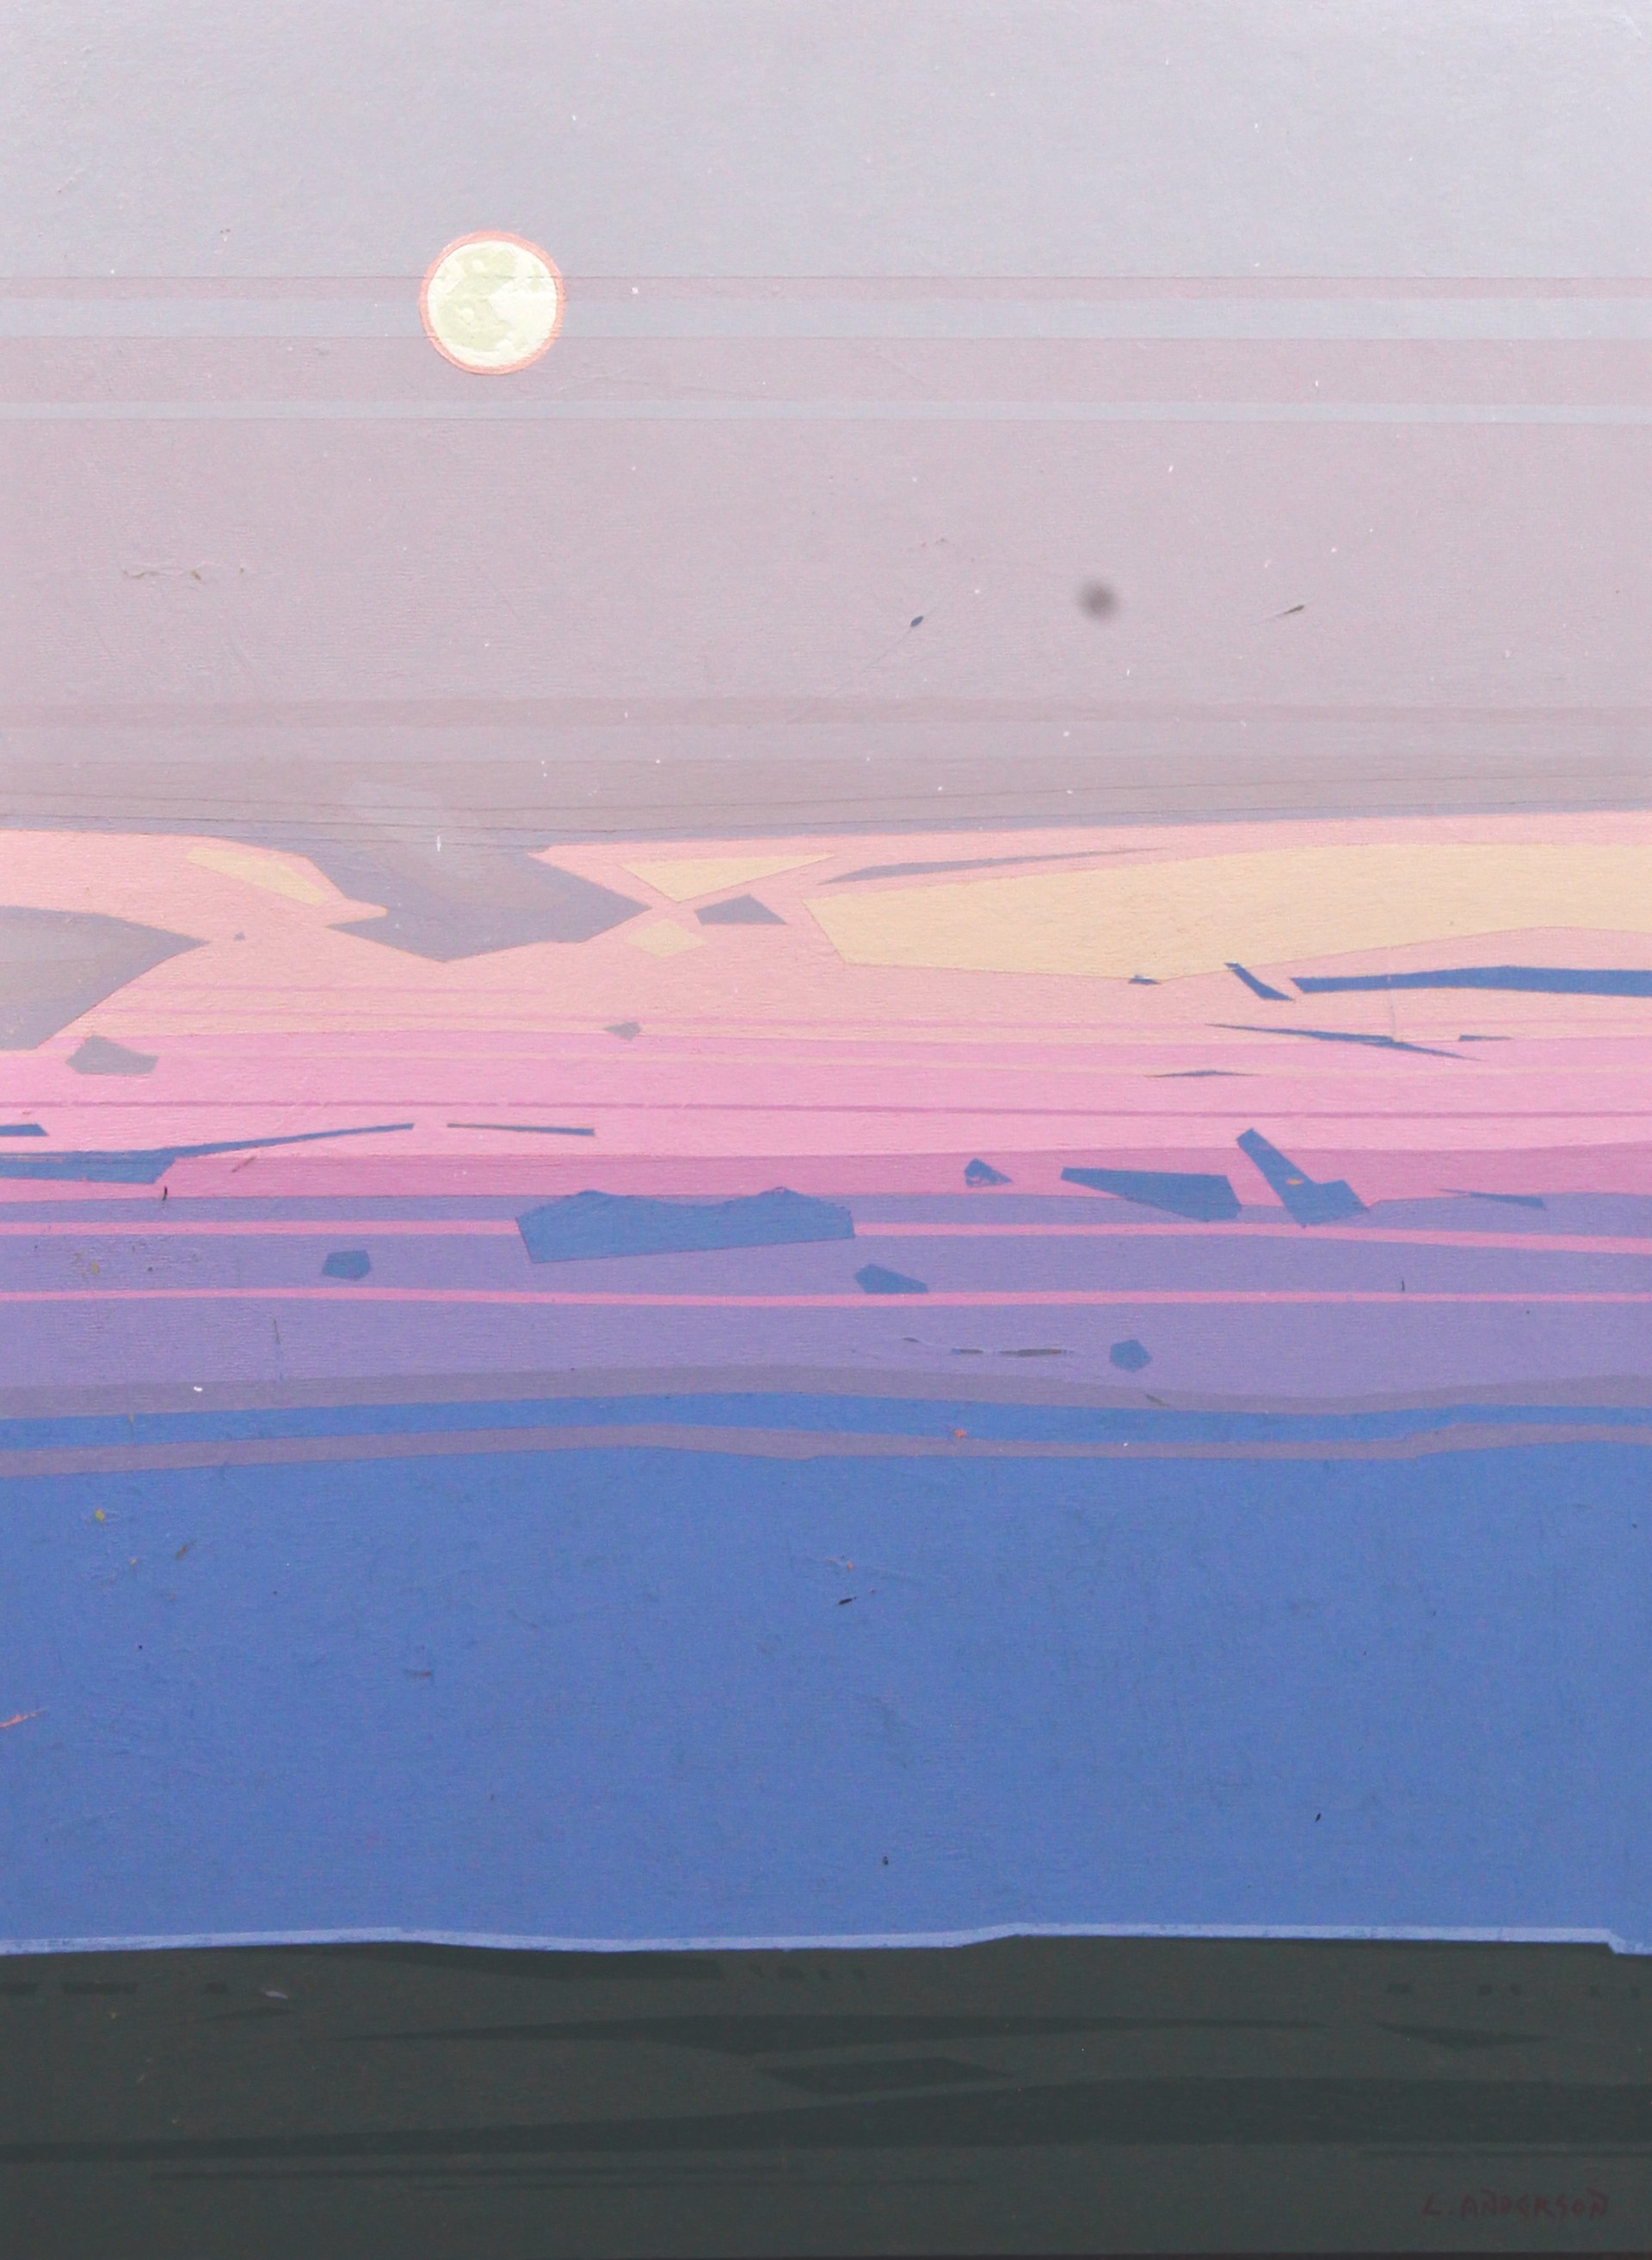 Prairie Moonrise by Luke Anderson